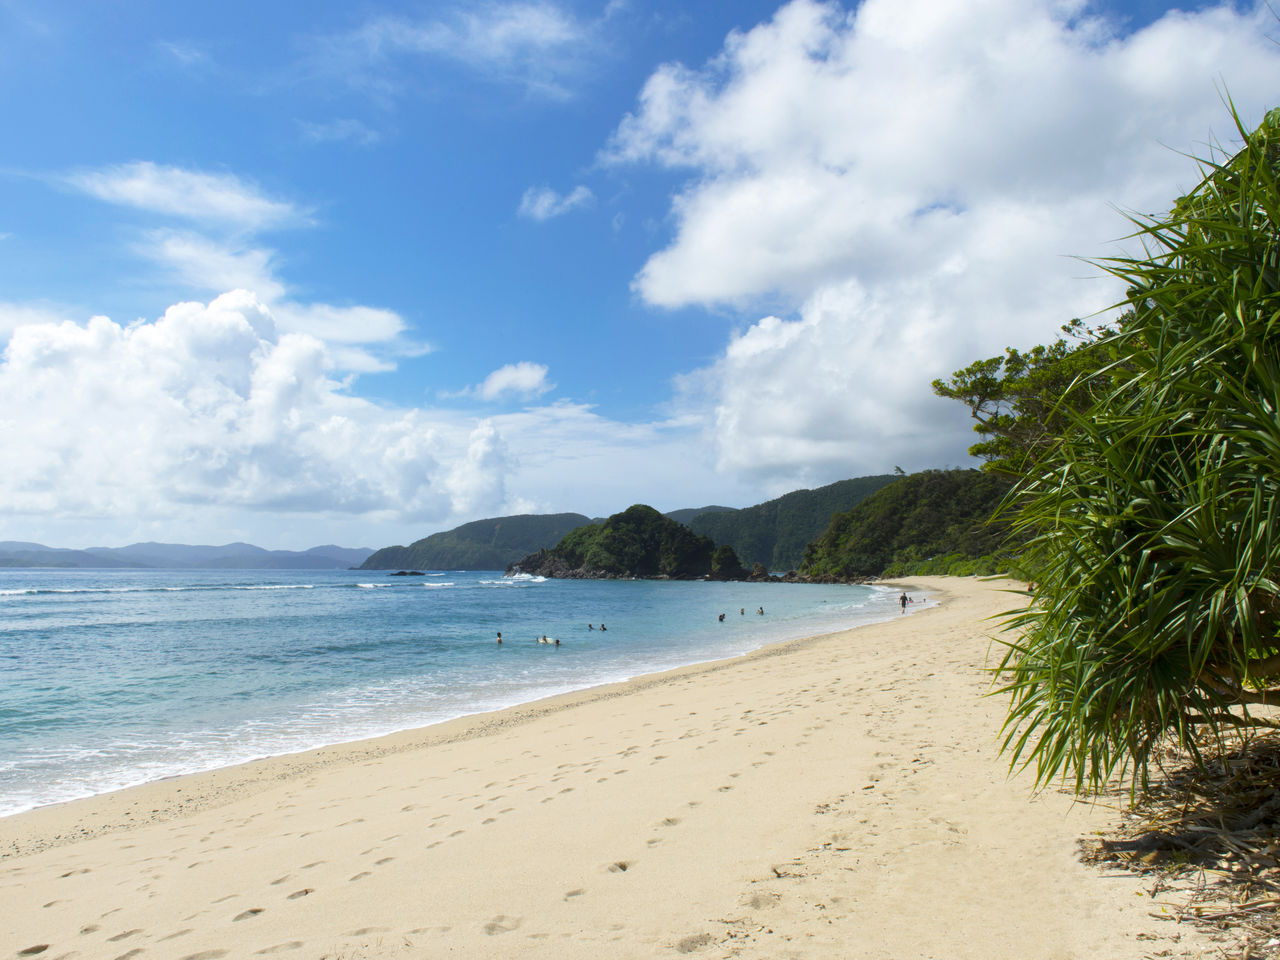 La plage de Yadorihama offre un contraste saisissant entre le sable blanc et les eaux bleues.